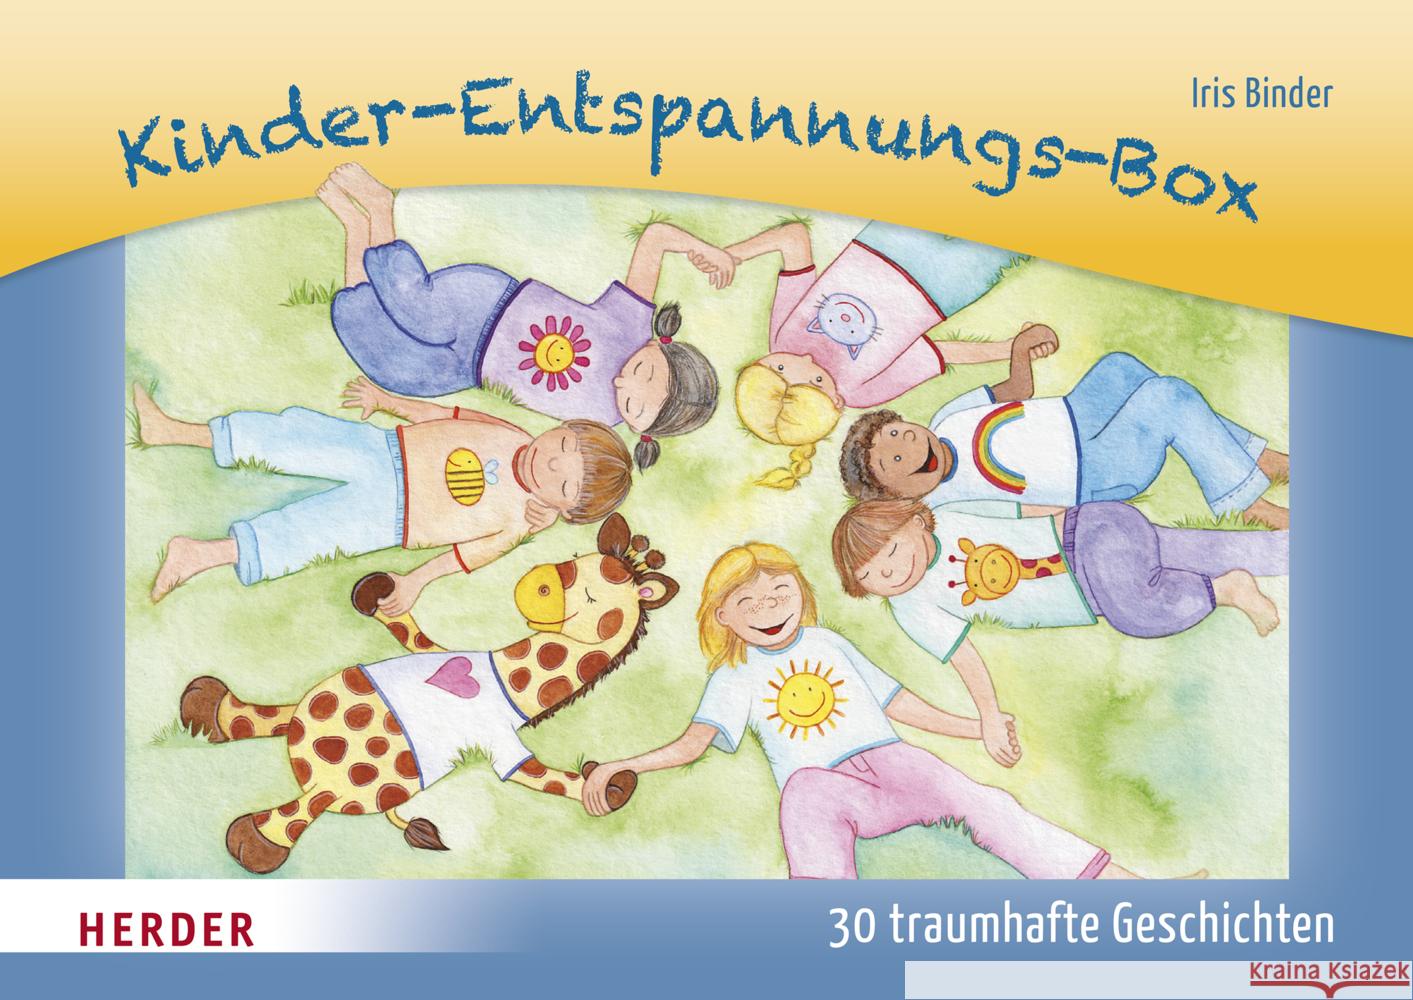 Kinder-Entspannungs-Box Binder, Iris 9783451390944 Herder, Freiburg - książka